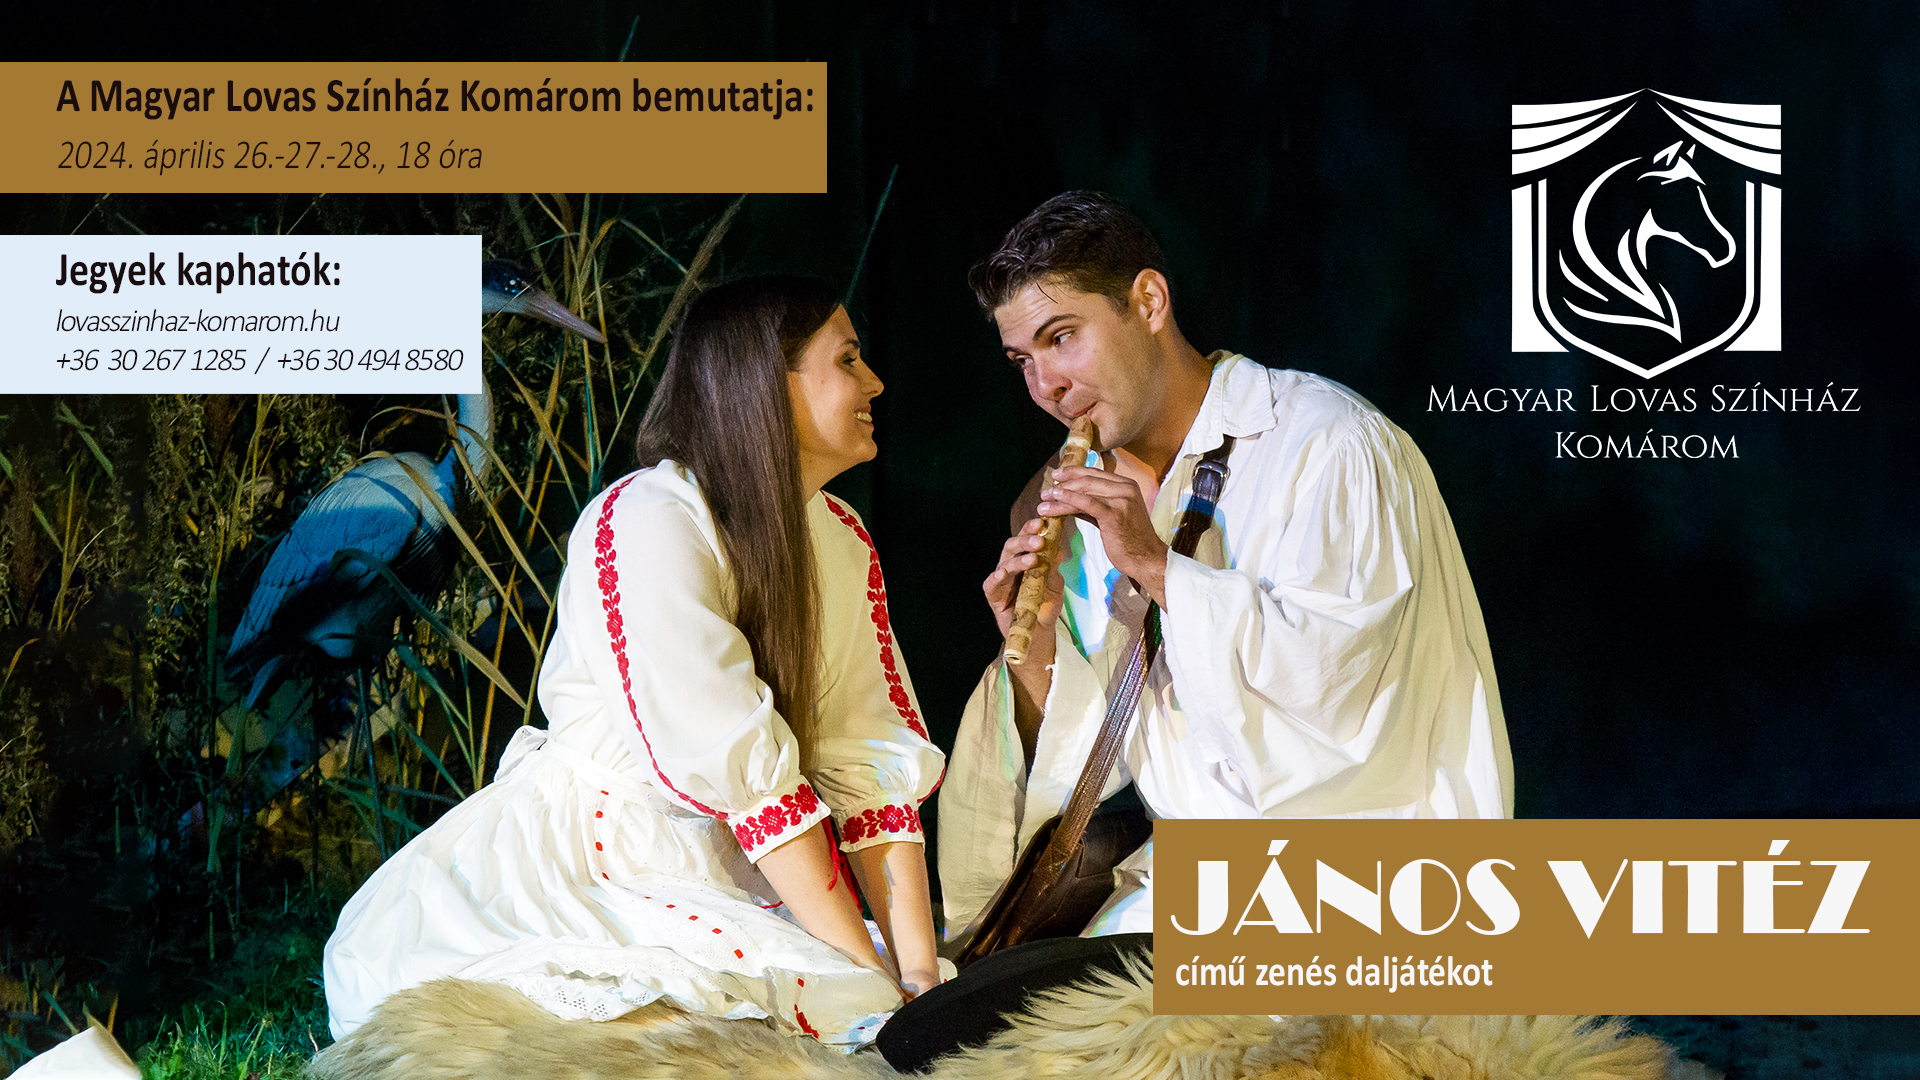 János vitéz-a Magyar Lovas Színház Komárom zenés daljátéka 04. 26-27-28.